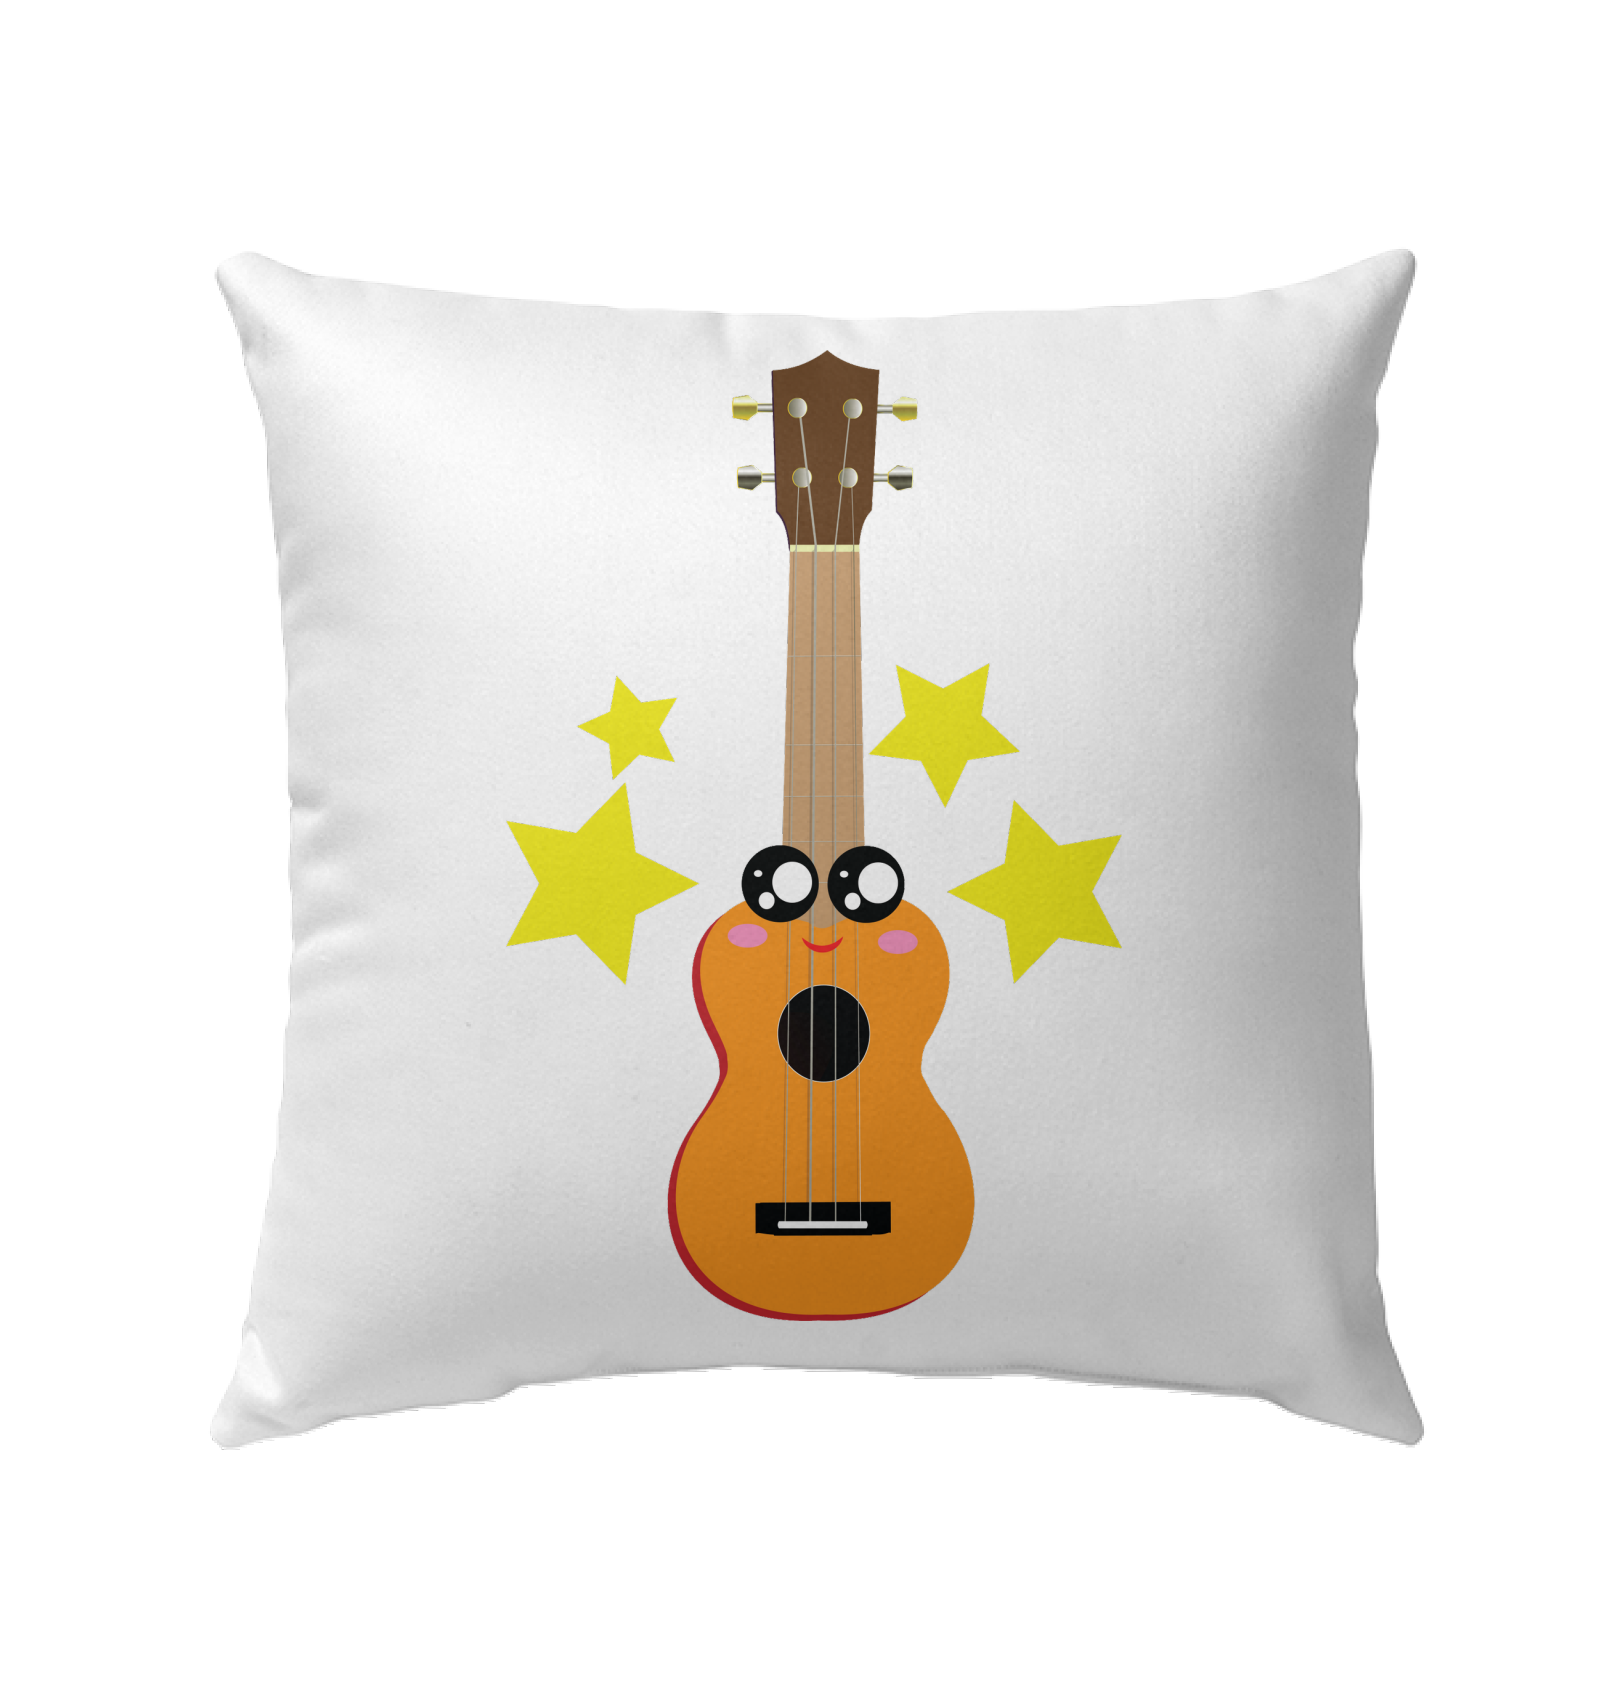 Cute Guitar - Outdoor Pillow